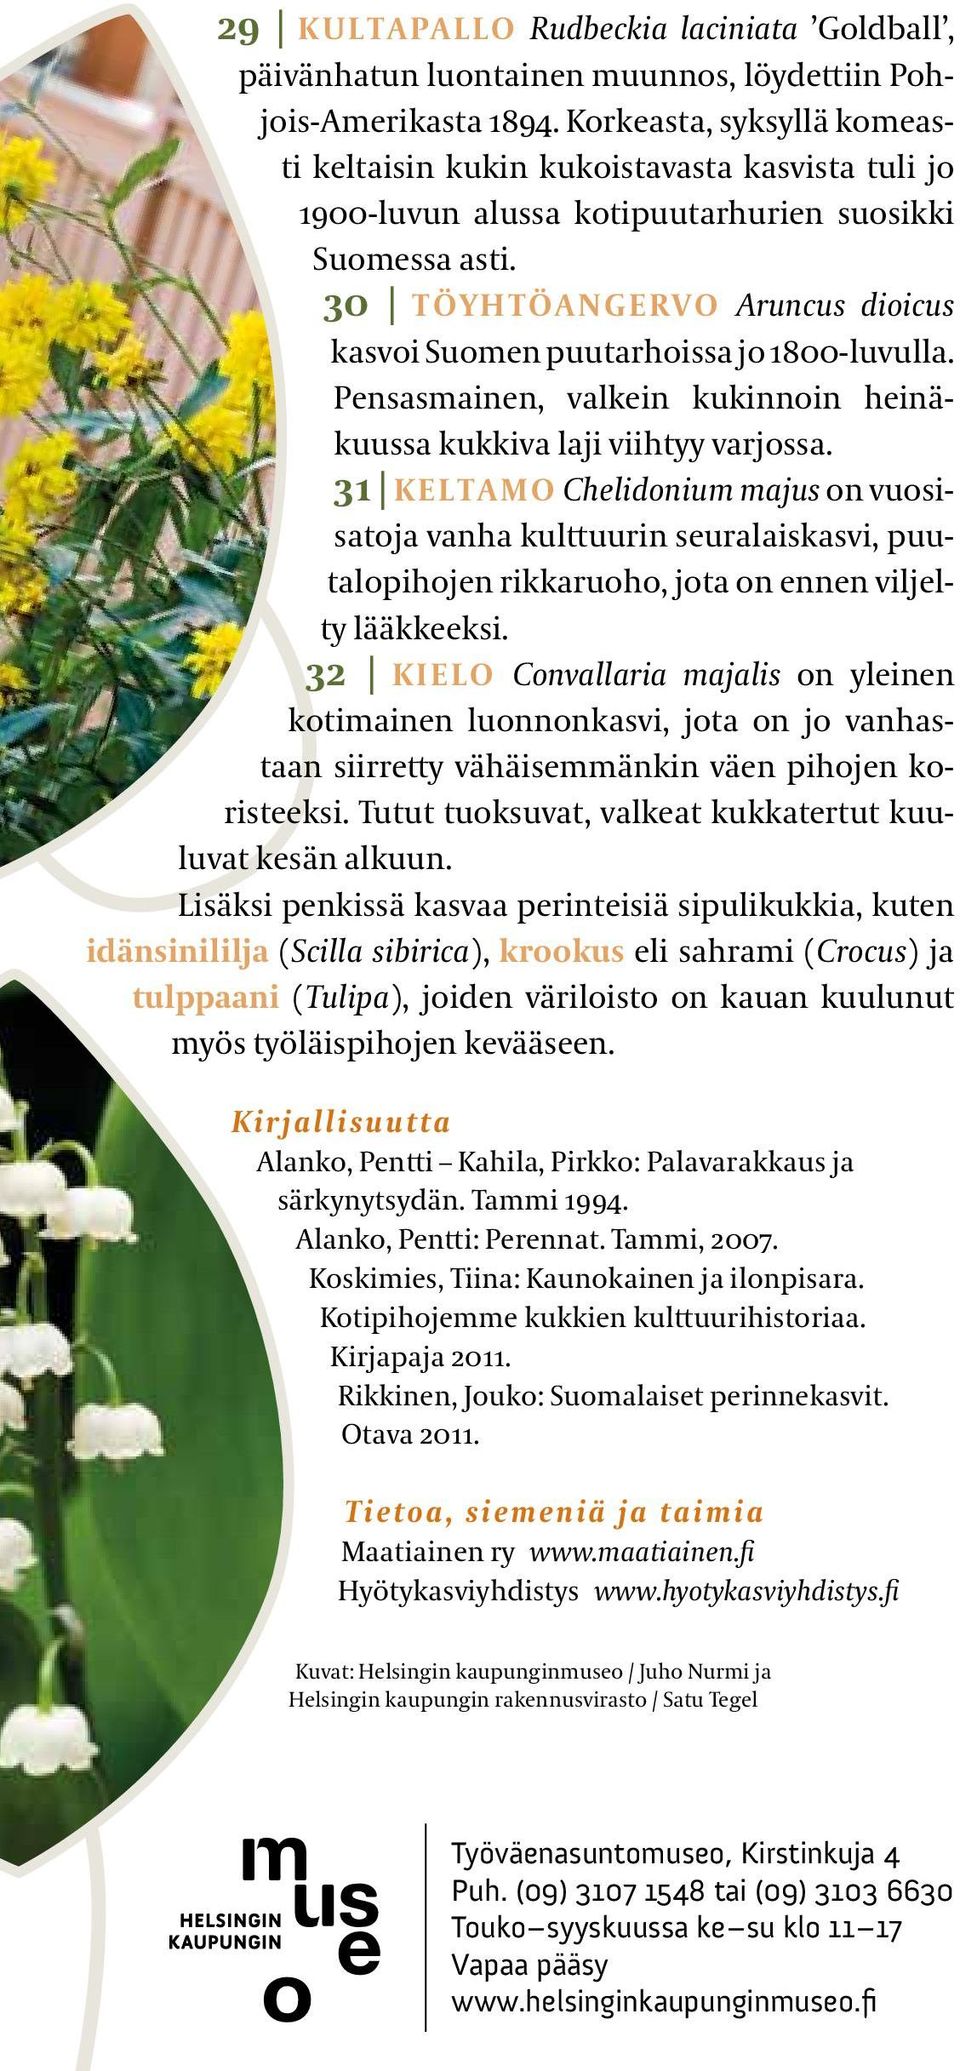 30 TöyhTöangeRvo Aruncus dioicus kasvoi Suomen puutarhoissa jo 1800 luvulla. Pensasmainen, valkein kukinnoin heinäkuussa kukkiva laji viihtyy varjossa.